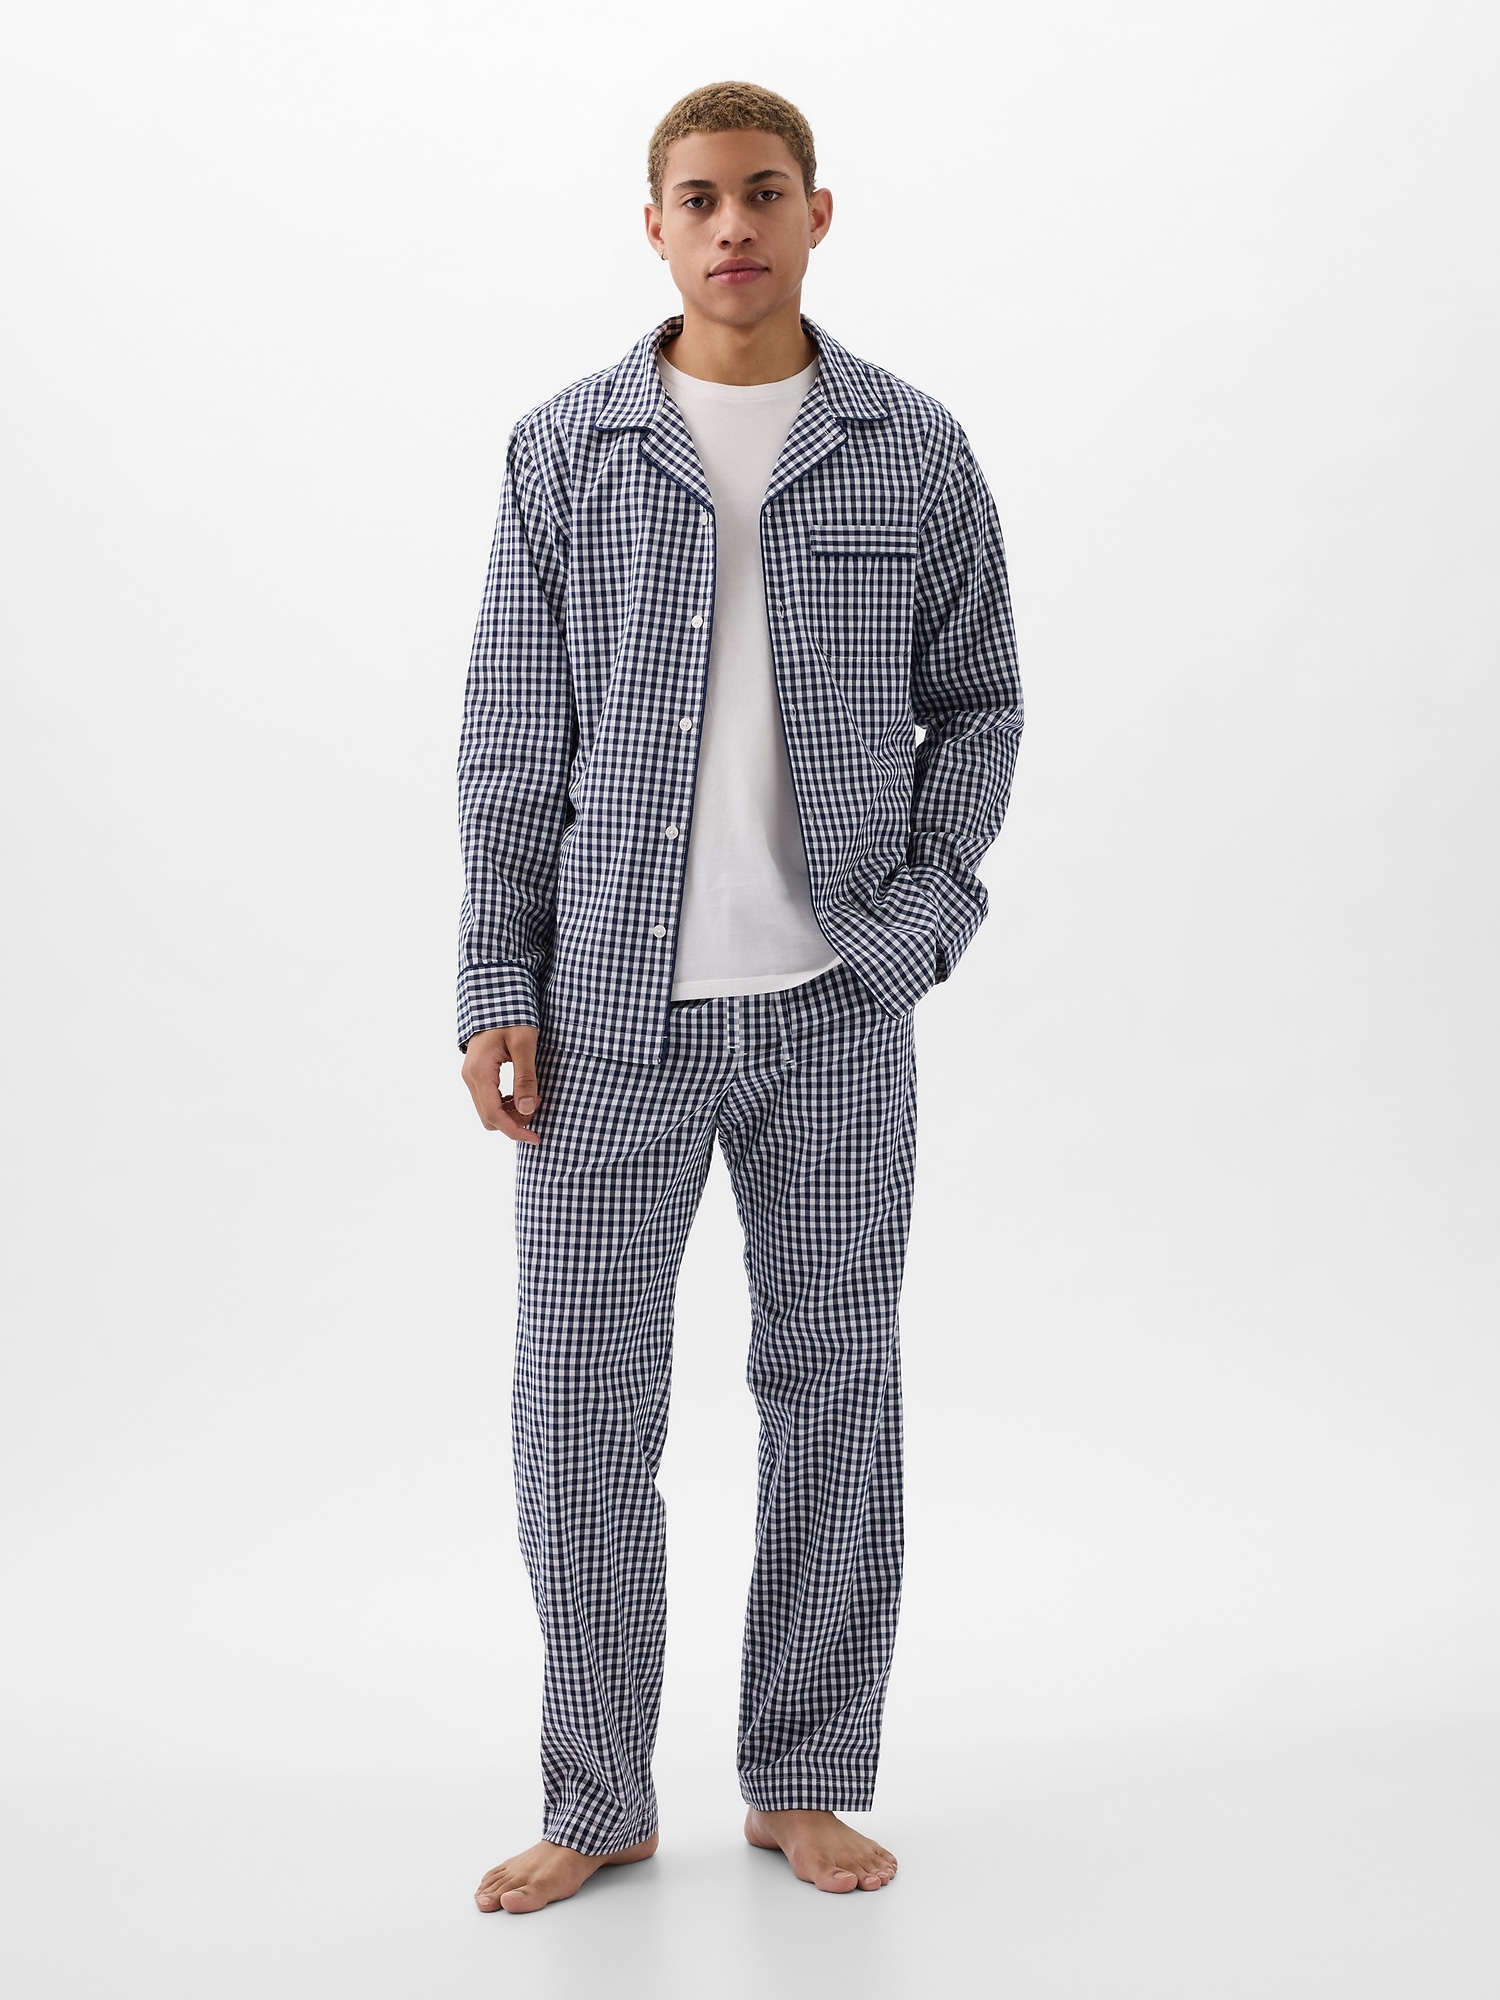 Poplin Pajama Set